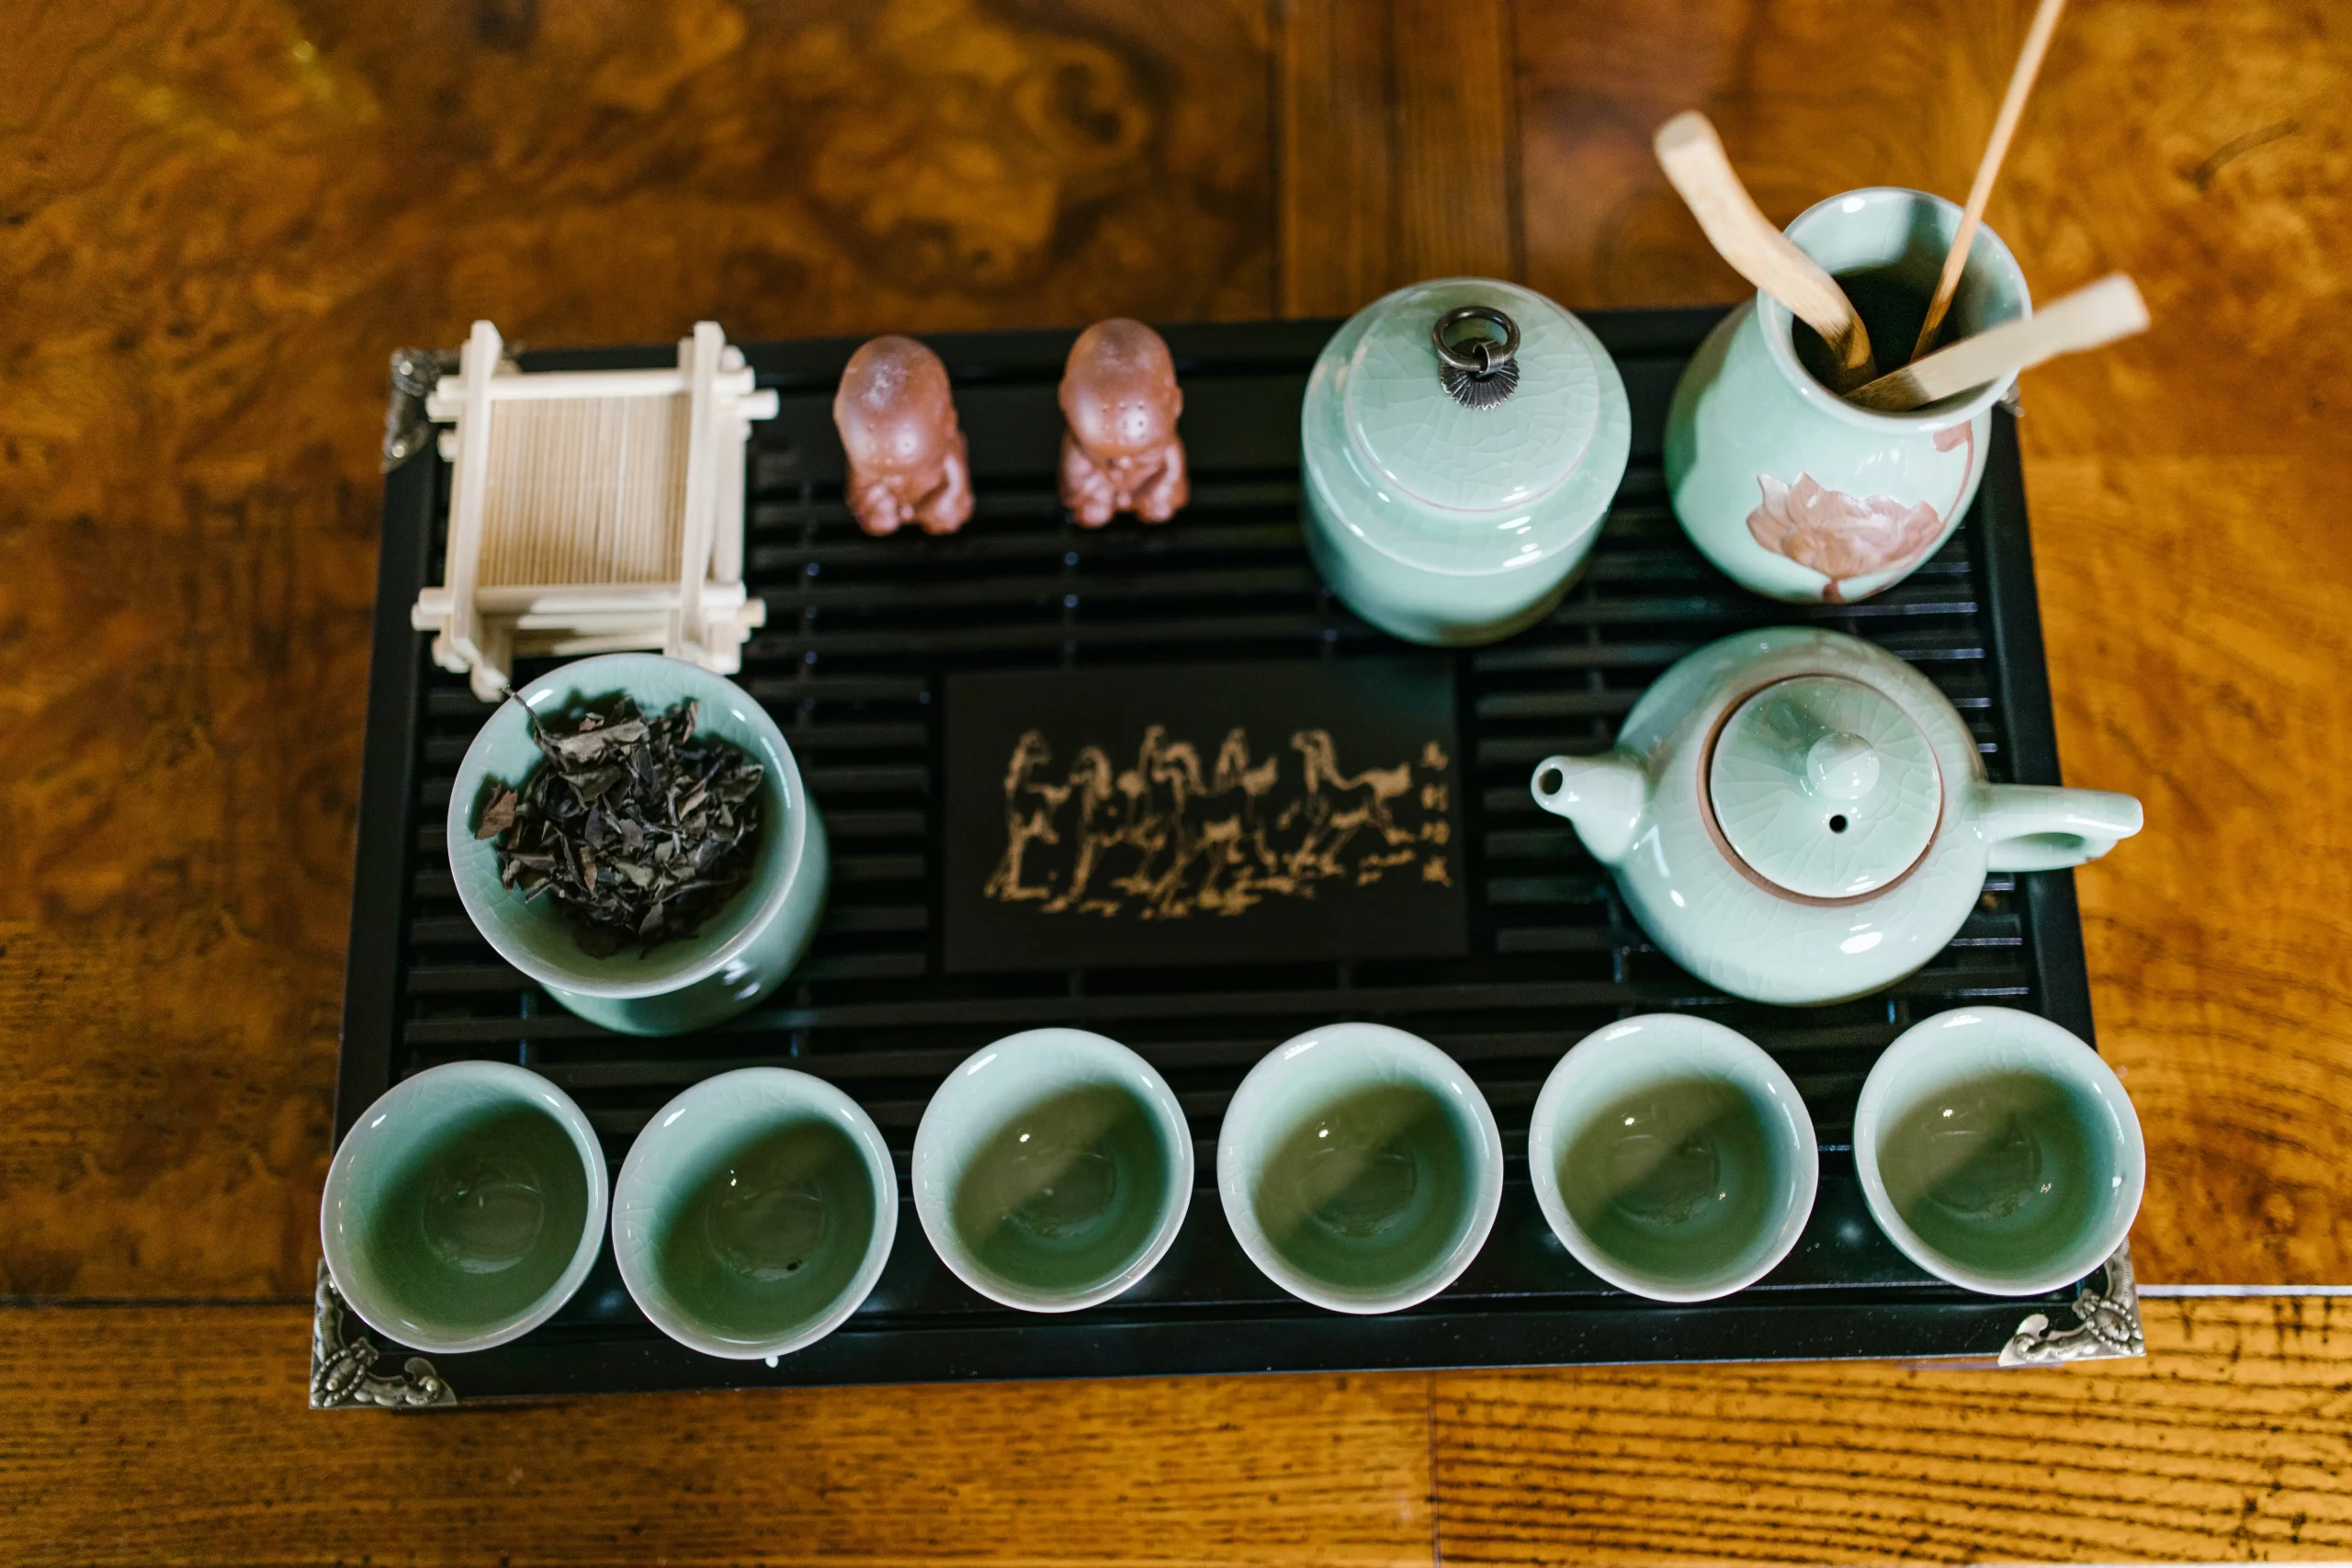 طقم شاي صيني على صينية مع شاي أخضر يوضع على طاولة خشبية.